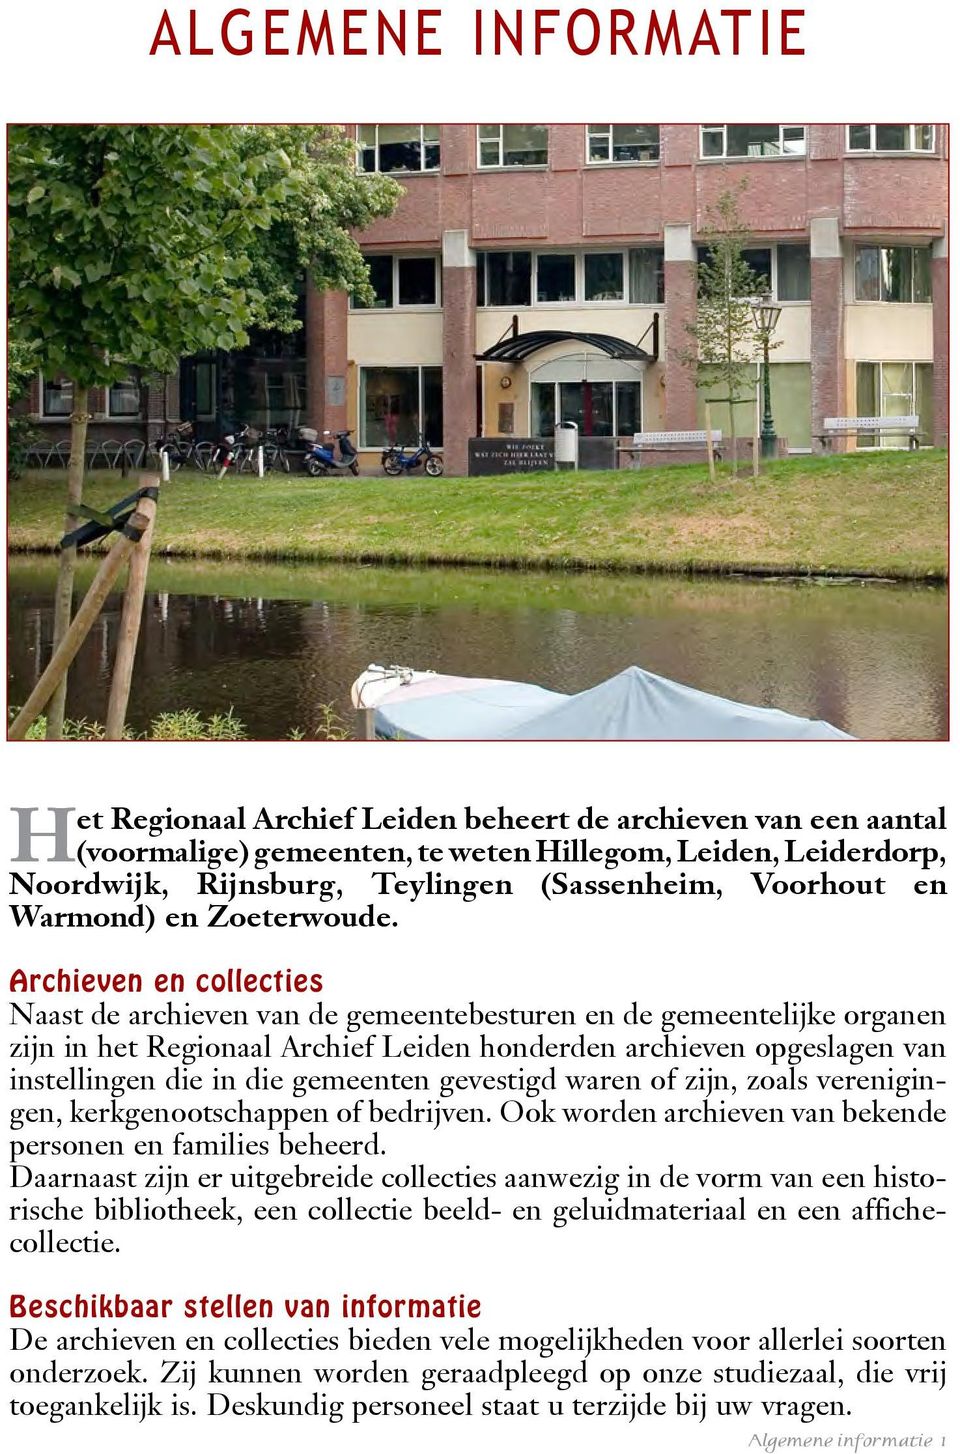 Archieven en collecties Naast de archieven van de gemeentebesturen en de gemeentelijke organen zijn in het Regionaal Archief Leiden honderden archieven opgeslagen van instellingen die in die